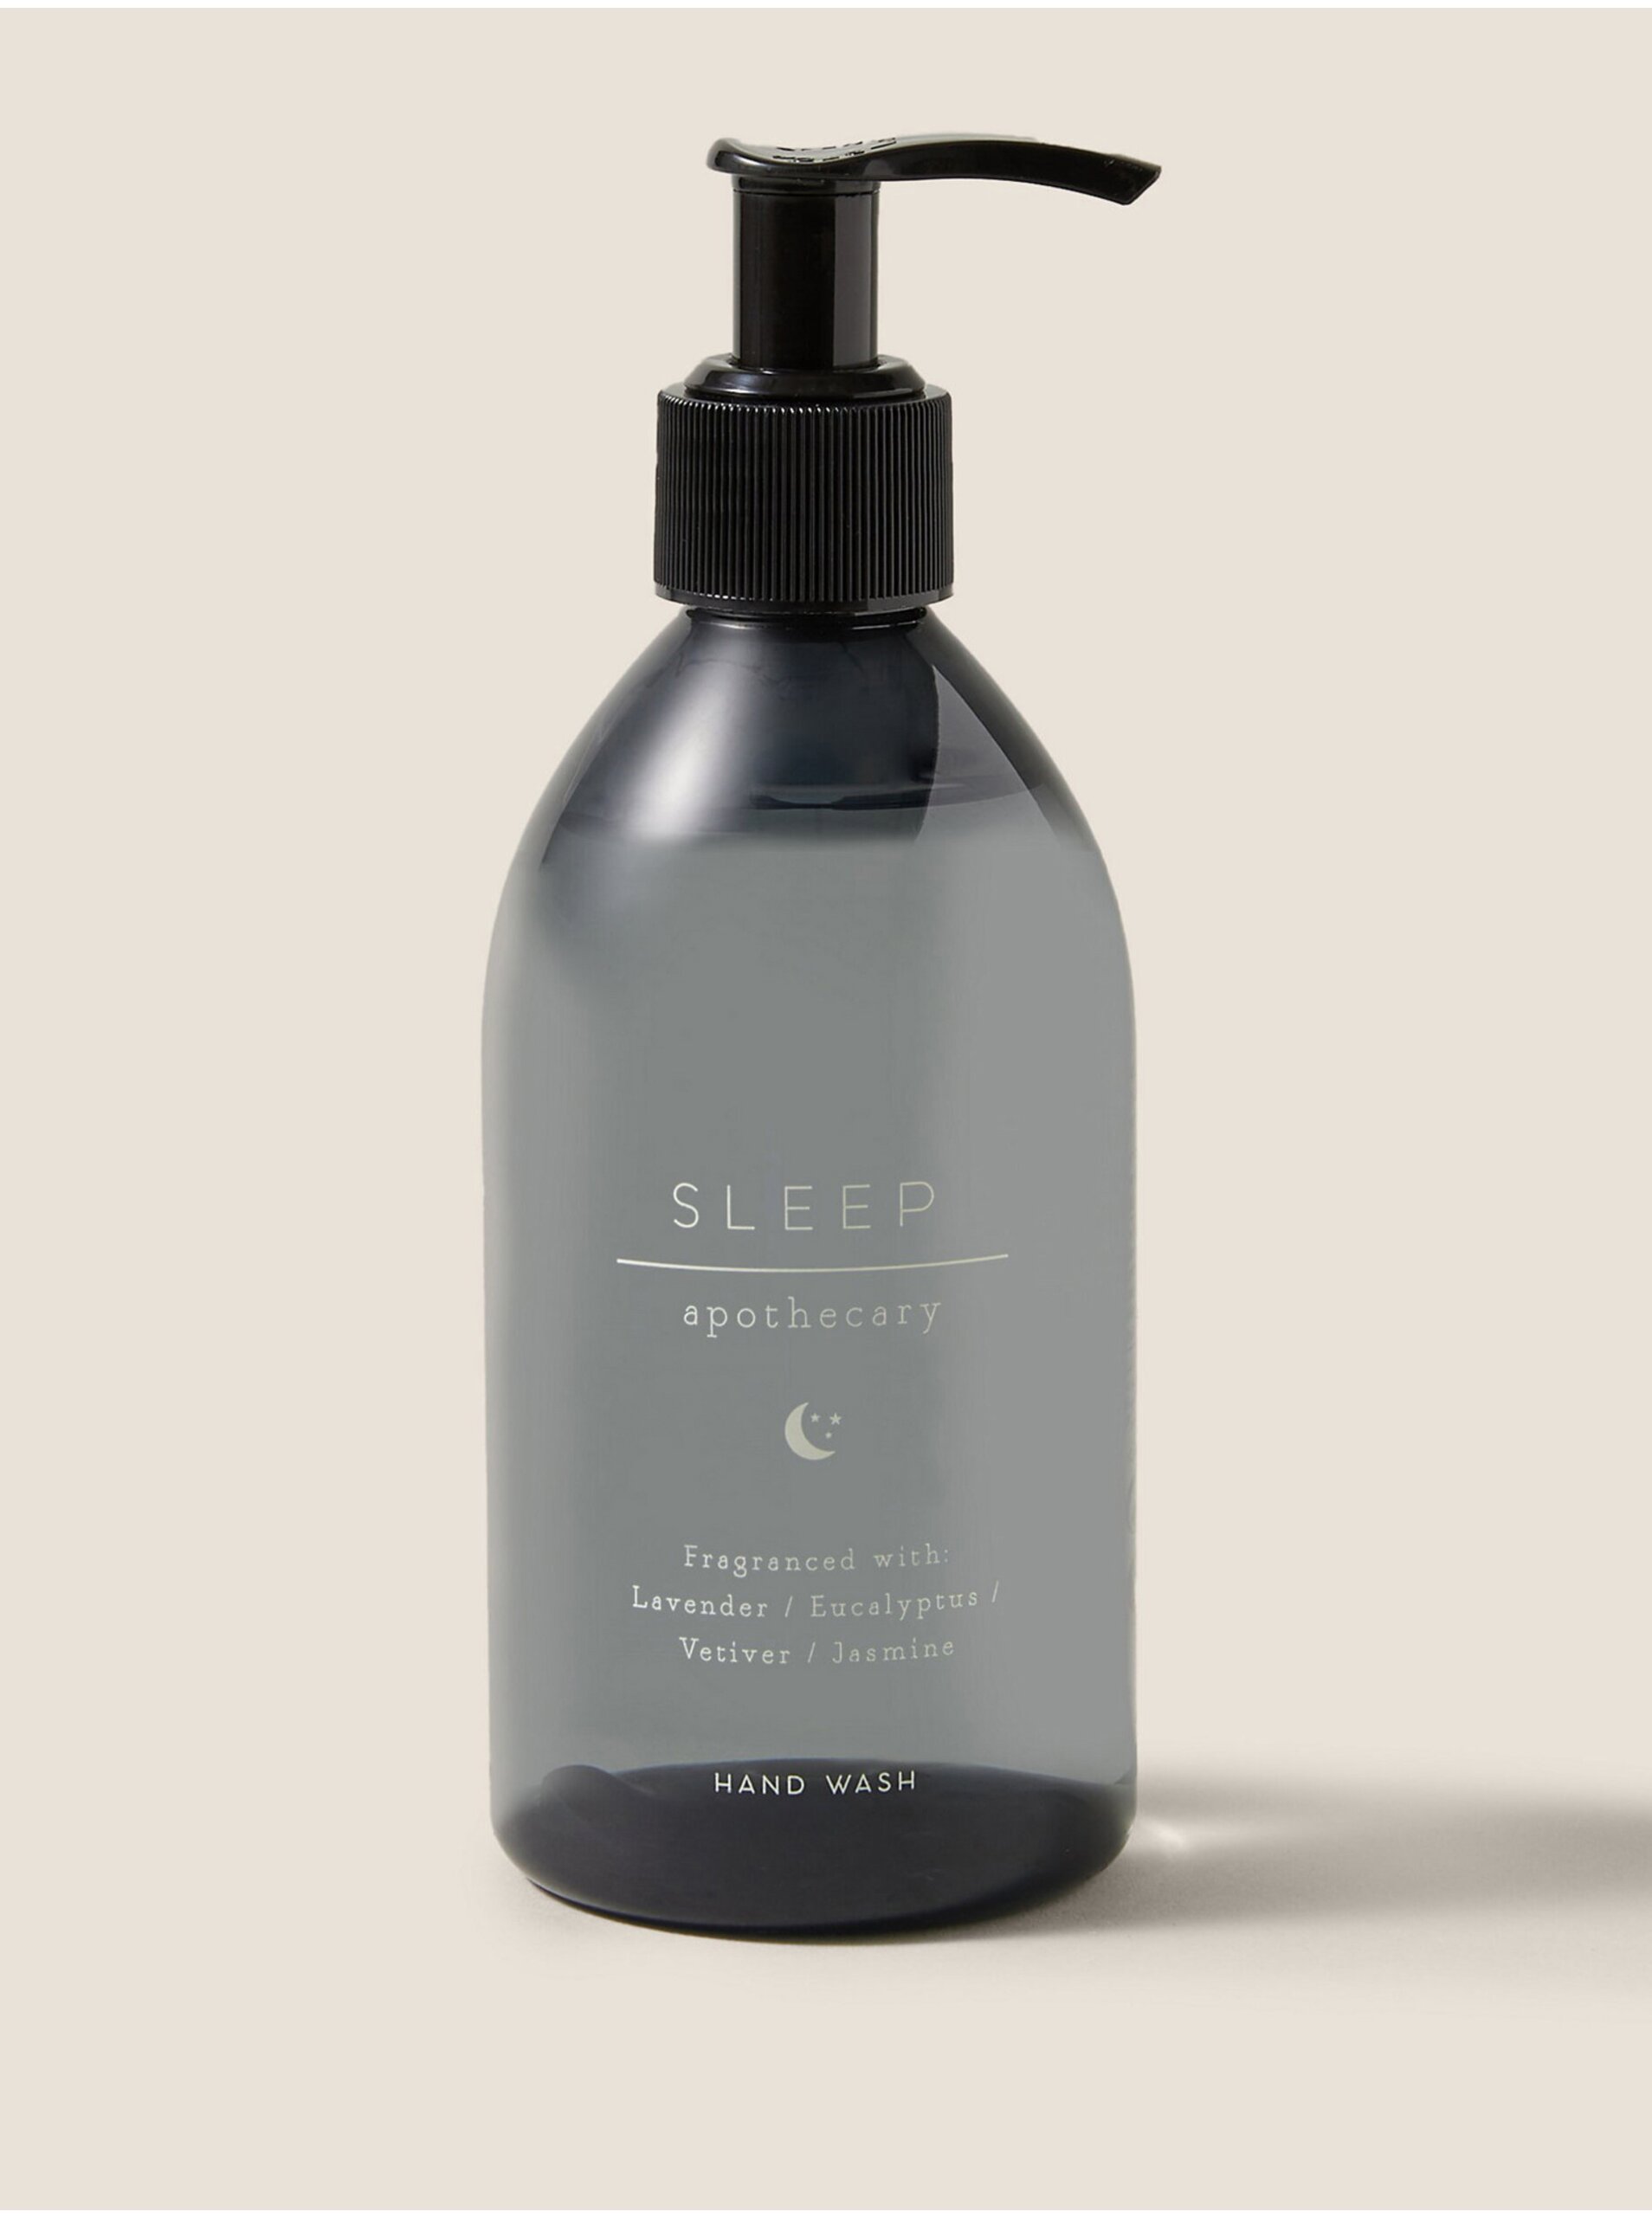 Lacno Tekuté mydlo s vôňou Sleep pre pokojný spánok z kolekcie Apothecary 250 ml Marks & Spencer